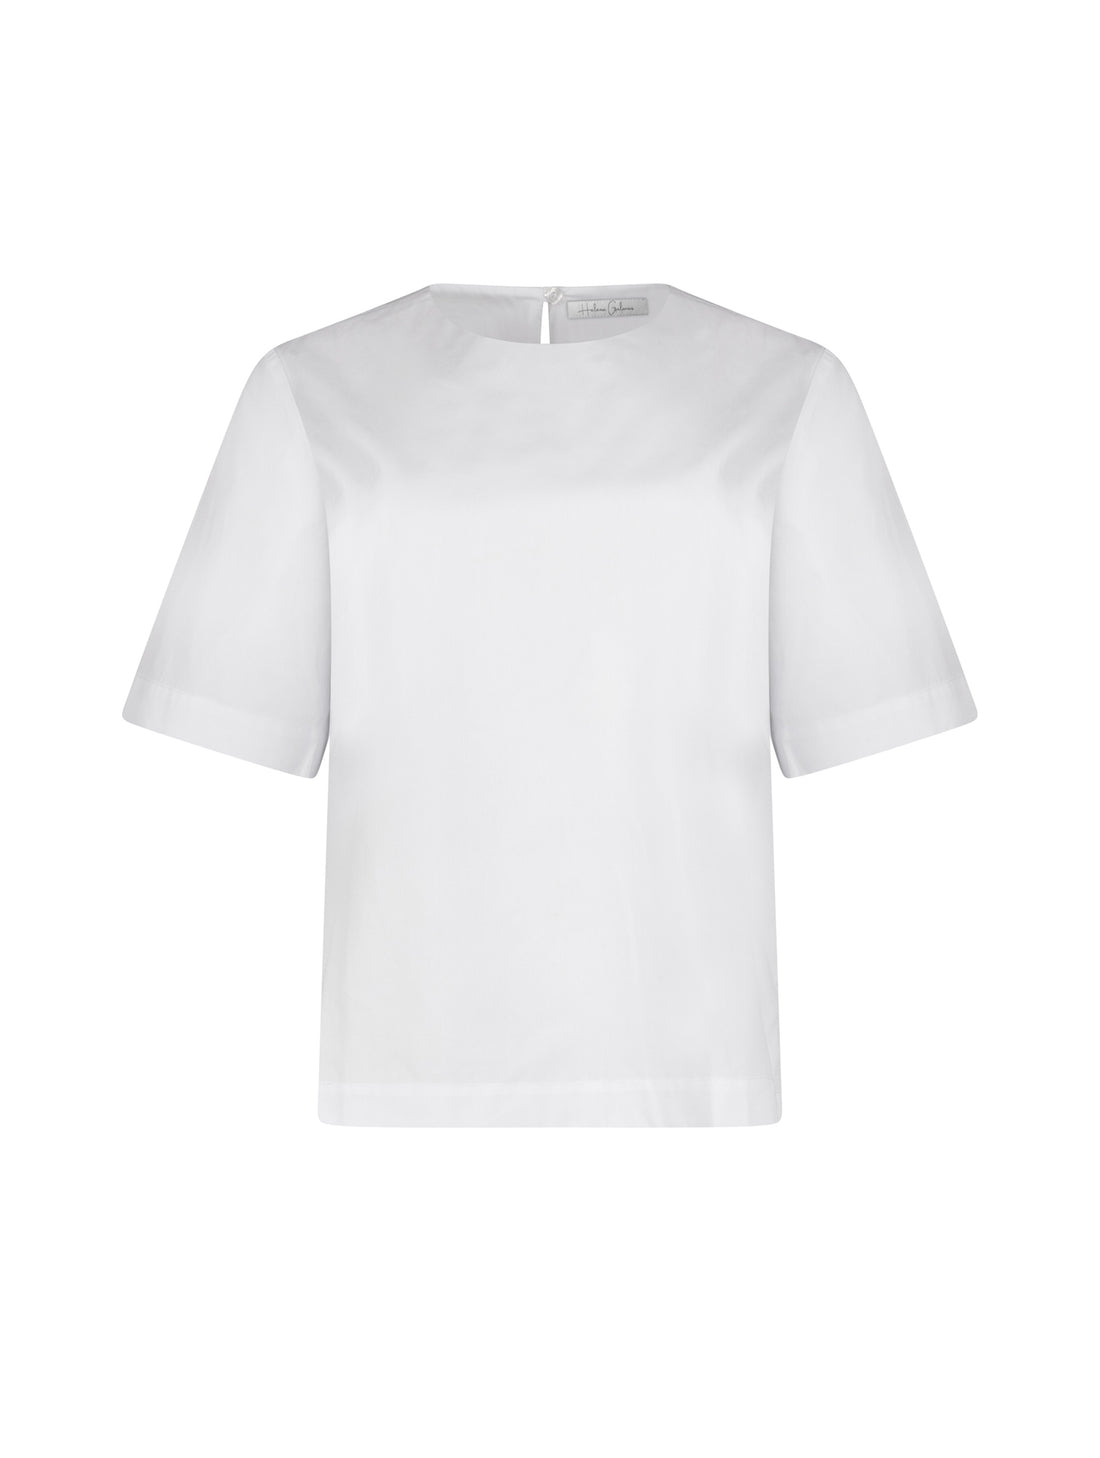 Hochgeschlossene Bluse aus Baumwolle im T-Shirt-Stil mit Knopfverschluss auf der Rückseite. Aus nachhaltiger Baumwolle gefertigt.